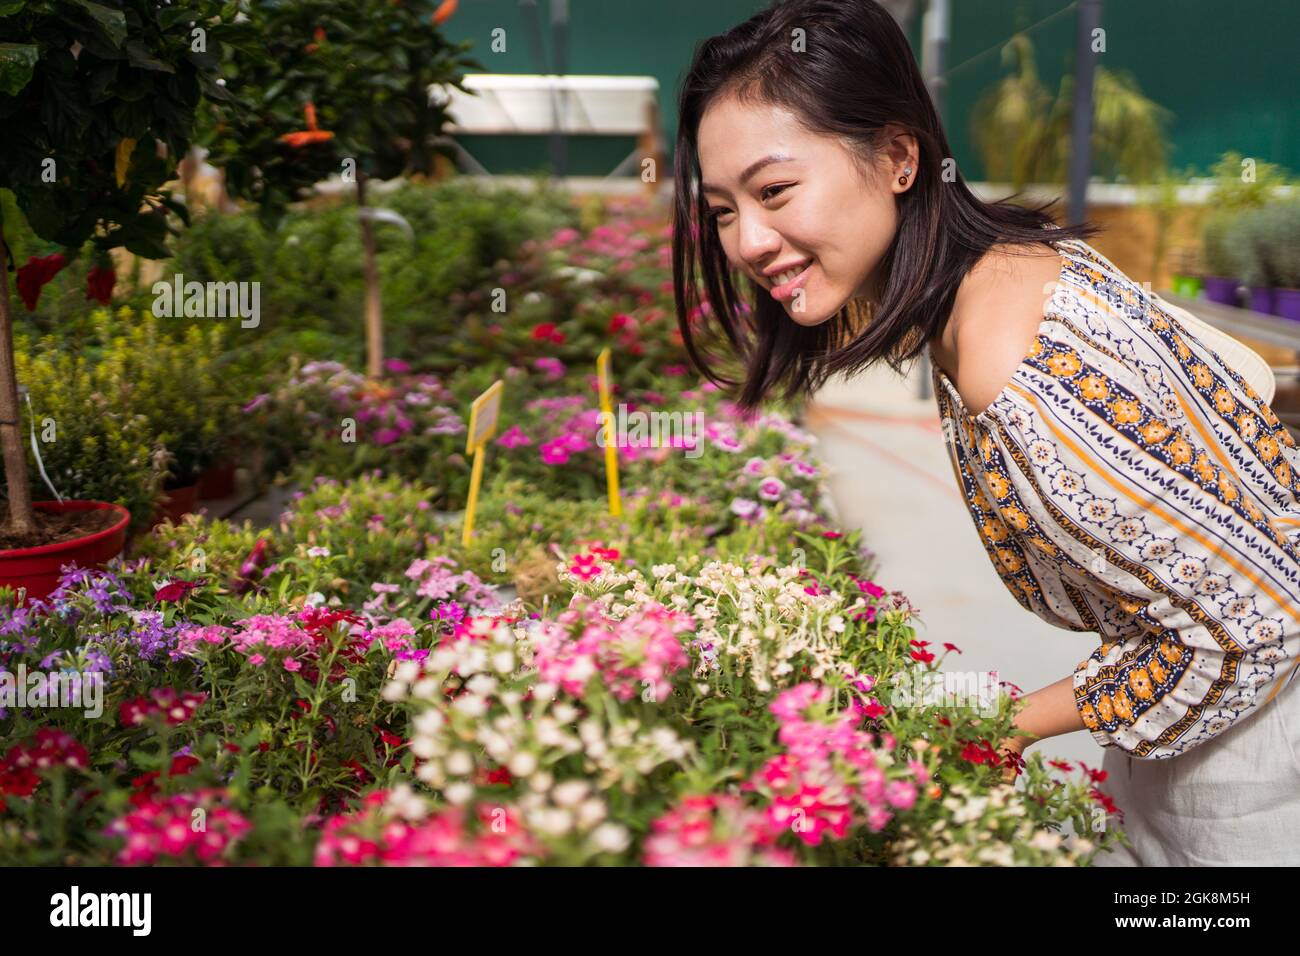 Vista laterale del giovane etnia giovane acquirente appoggiata in avanti mentre si raccolgono fiori in fiore nel centro giardino Foto Stock